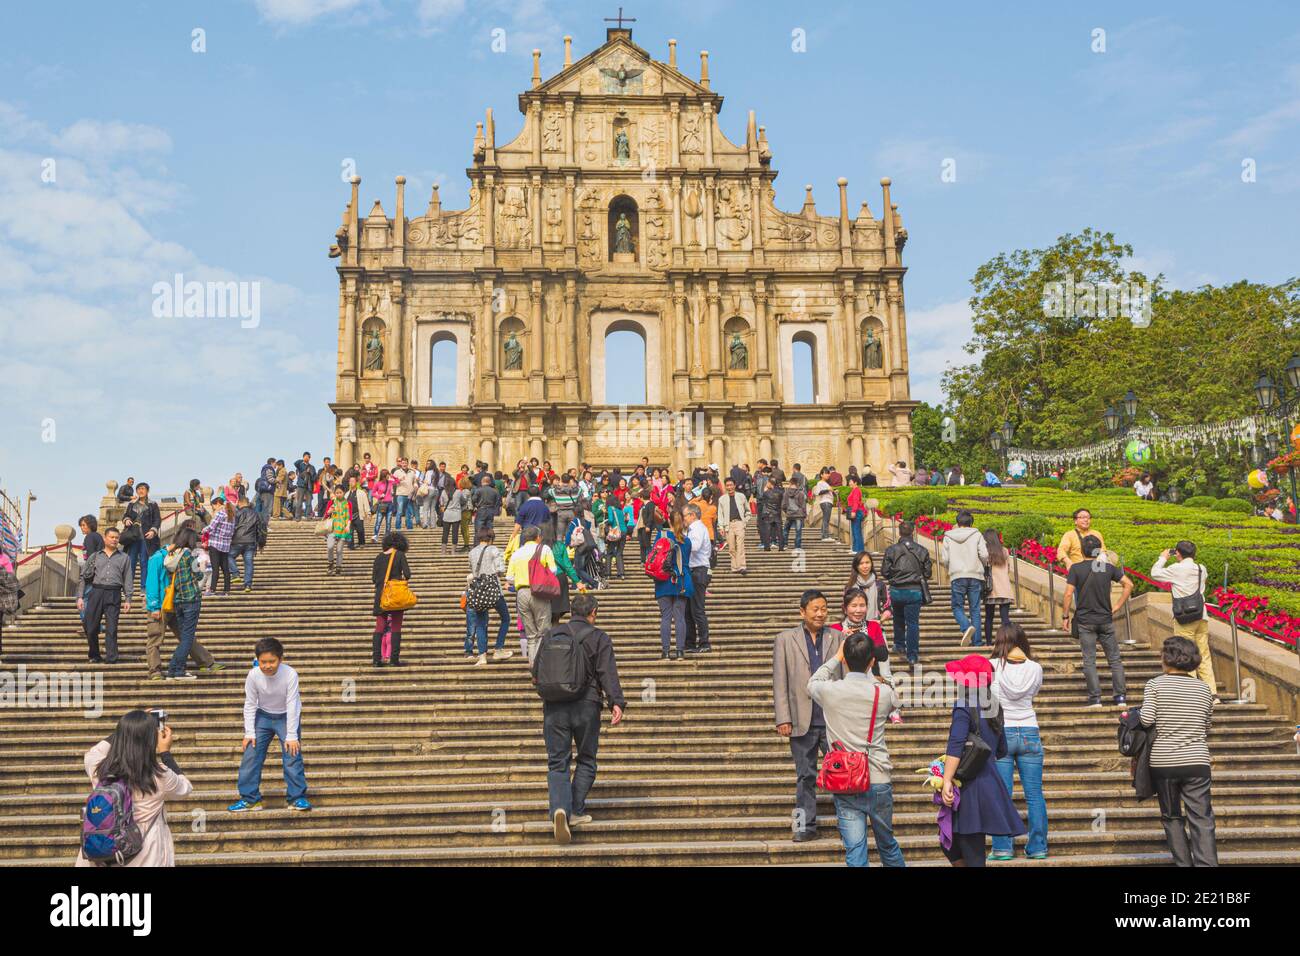 Macau, China. Ruinen der Kathedrale St. Paul aus dem 17. Jahrhundert. Ruinas do Sao Paulo. Nur die Fassade bleibt erhalten. St. Paul's ist Teil der historischen Stockfoto